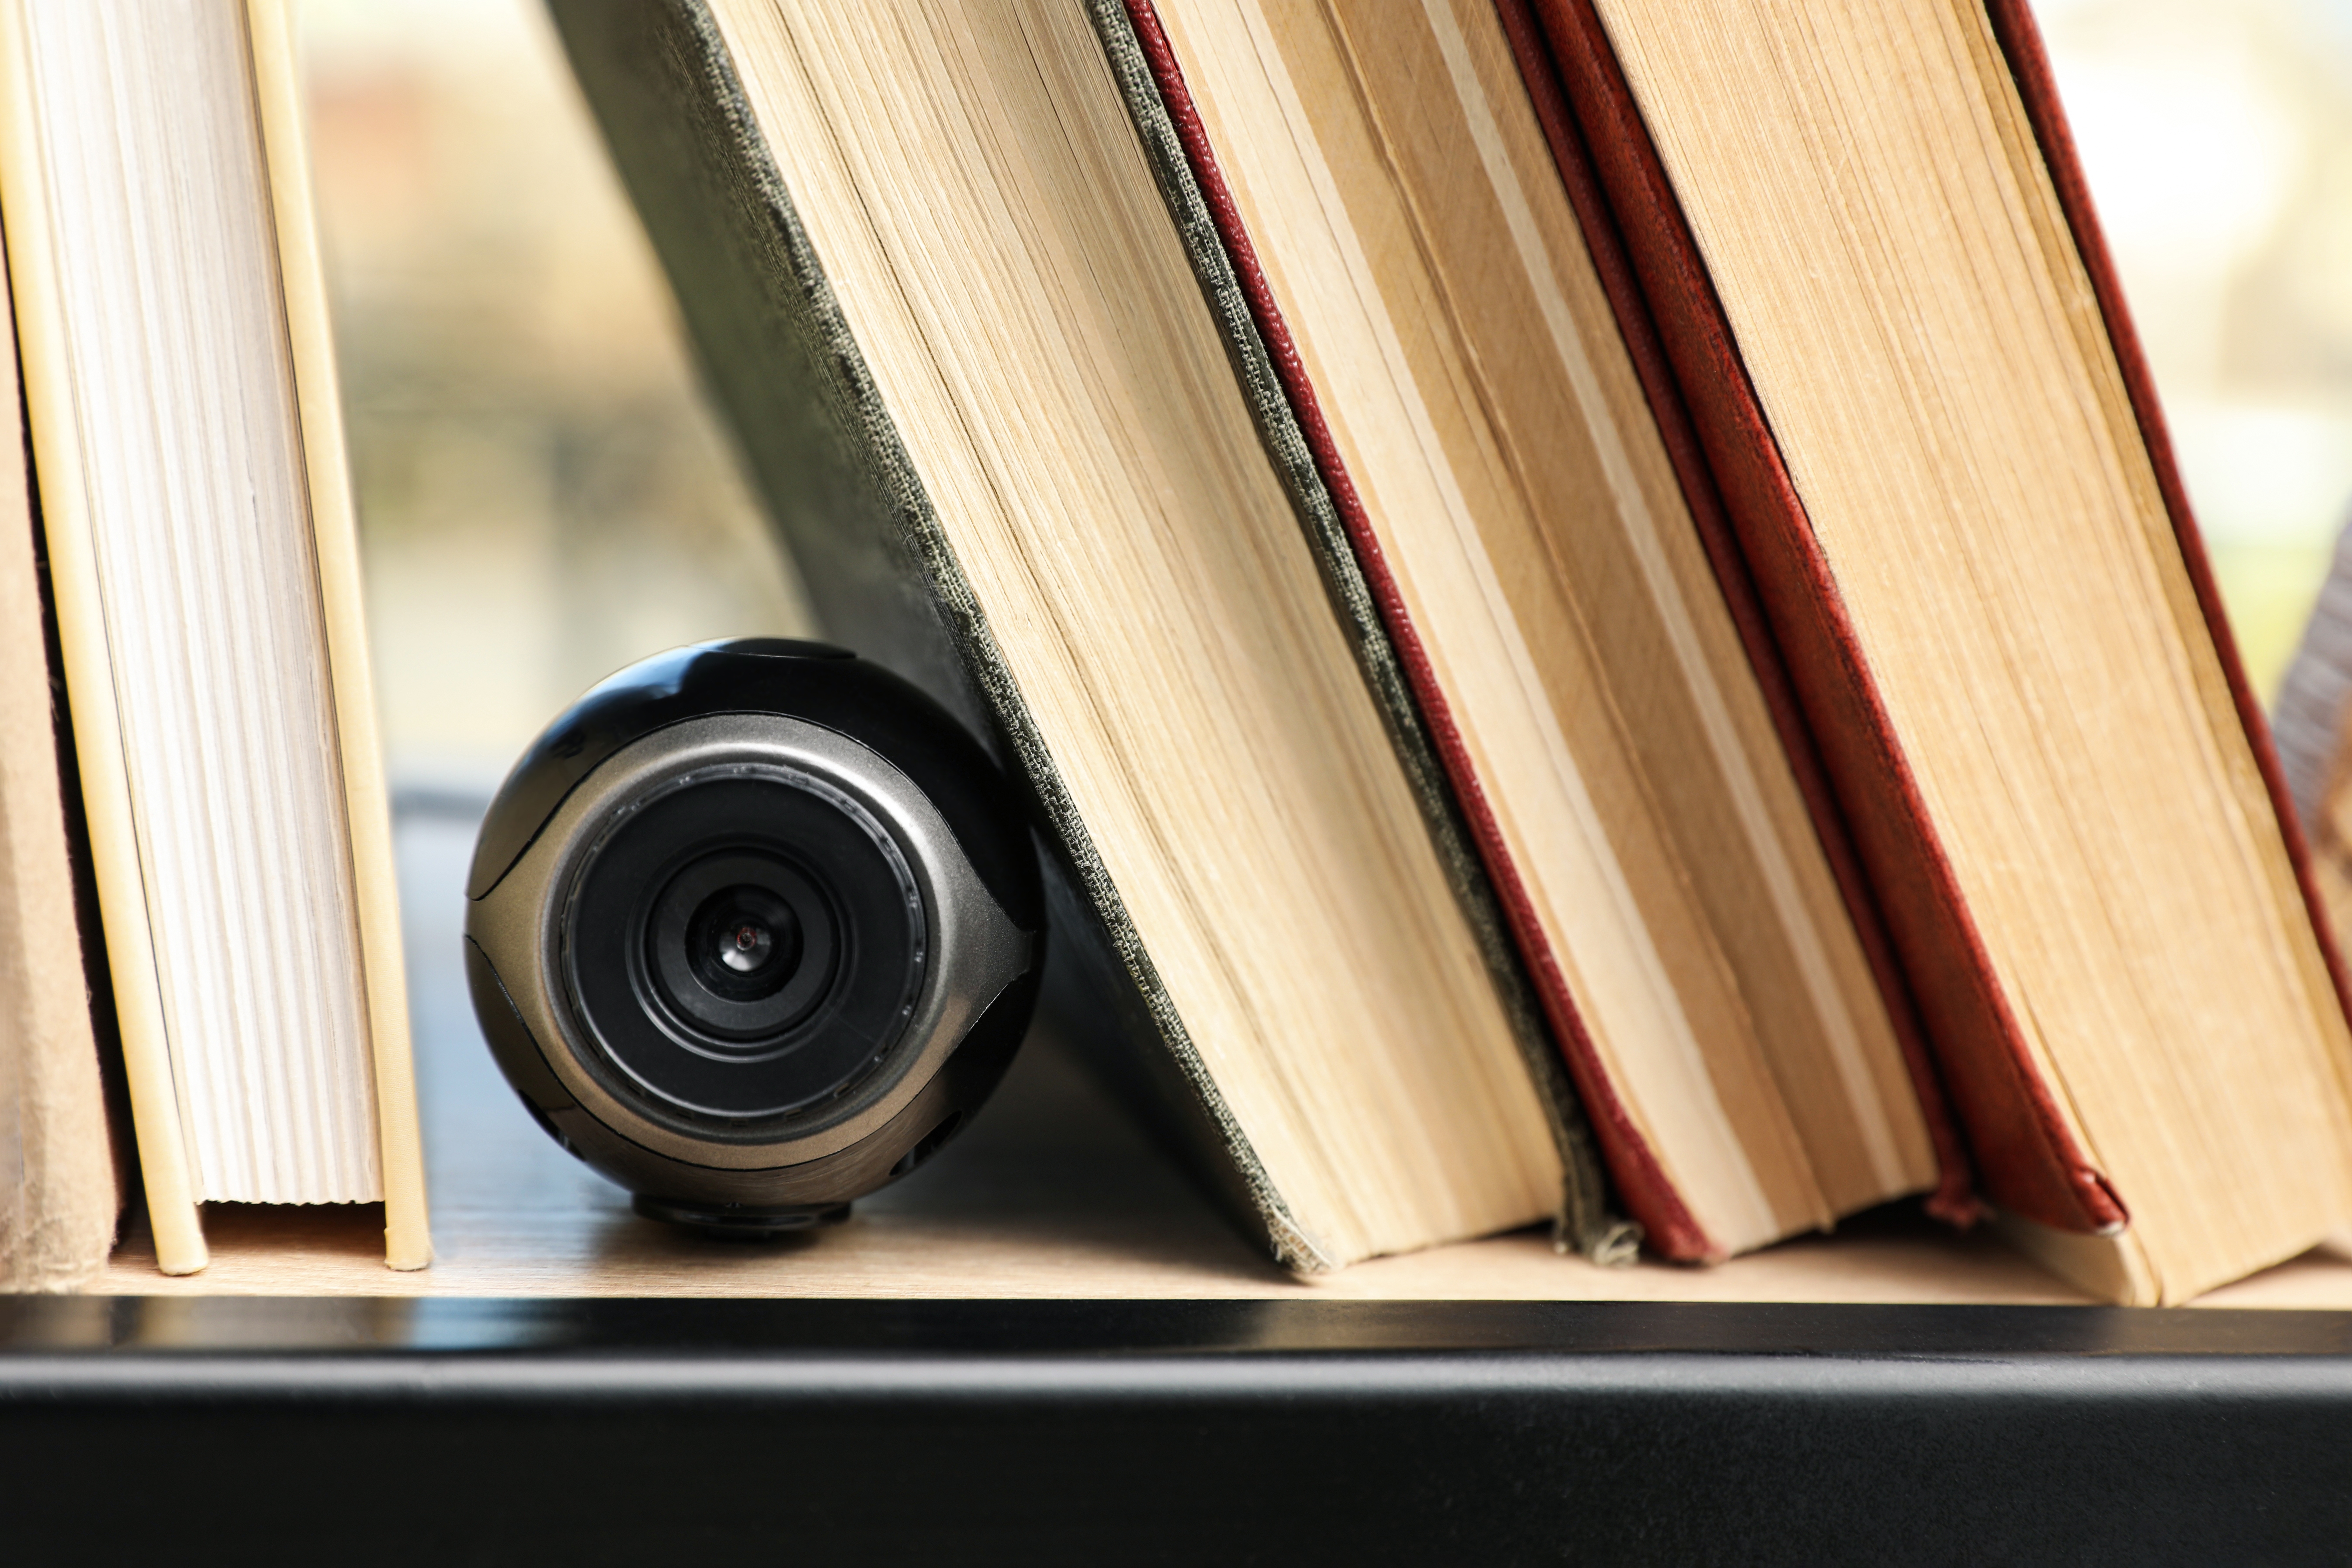 Eine zwischen Büchern versteckte Kamera | Quelle: Shutterstock